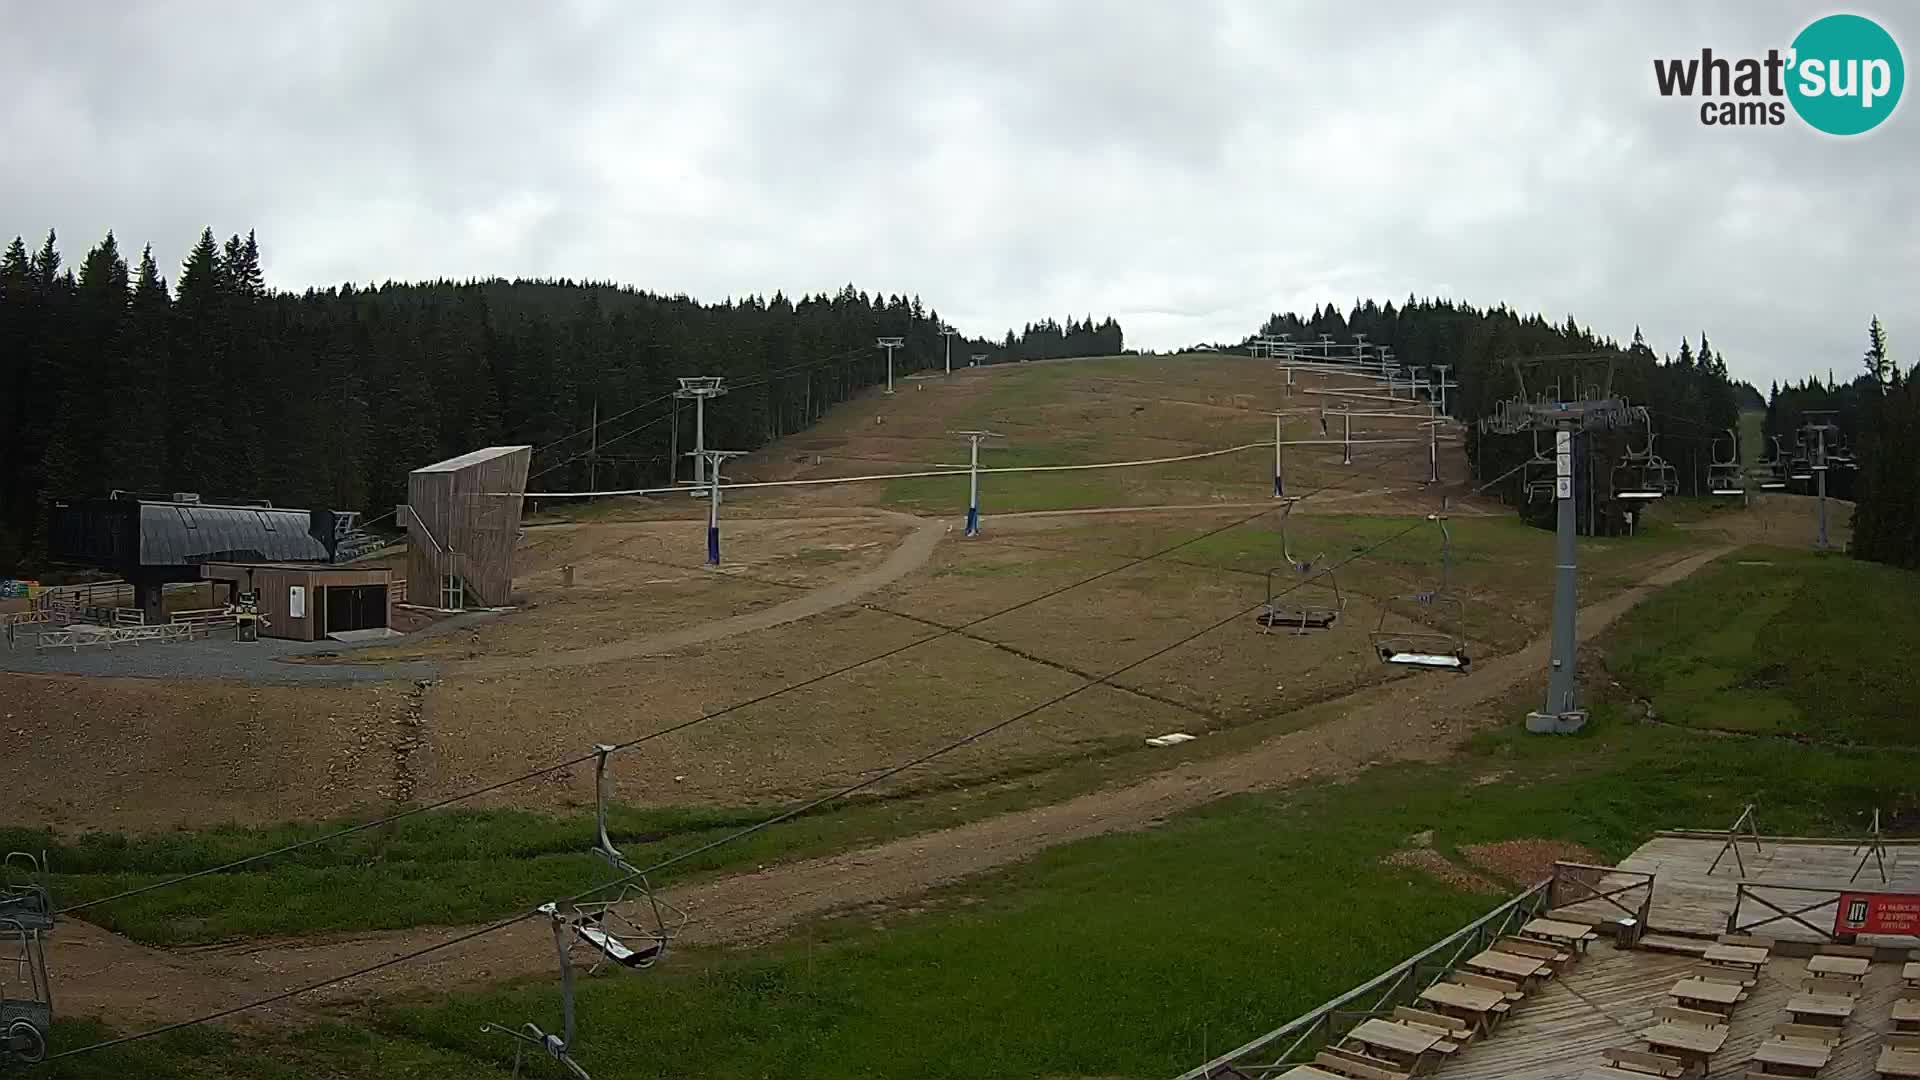 Rogla ski resort – MšinŽaga – Funpark